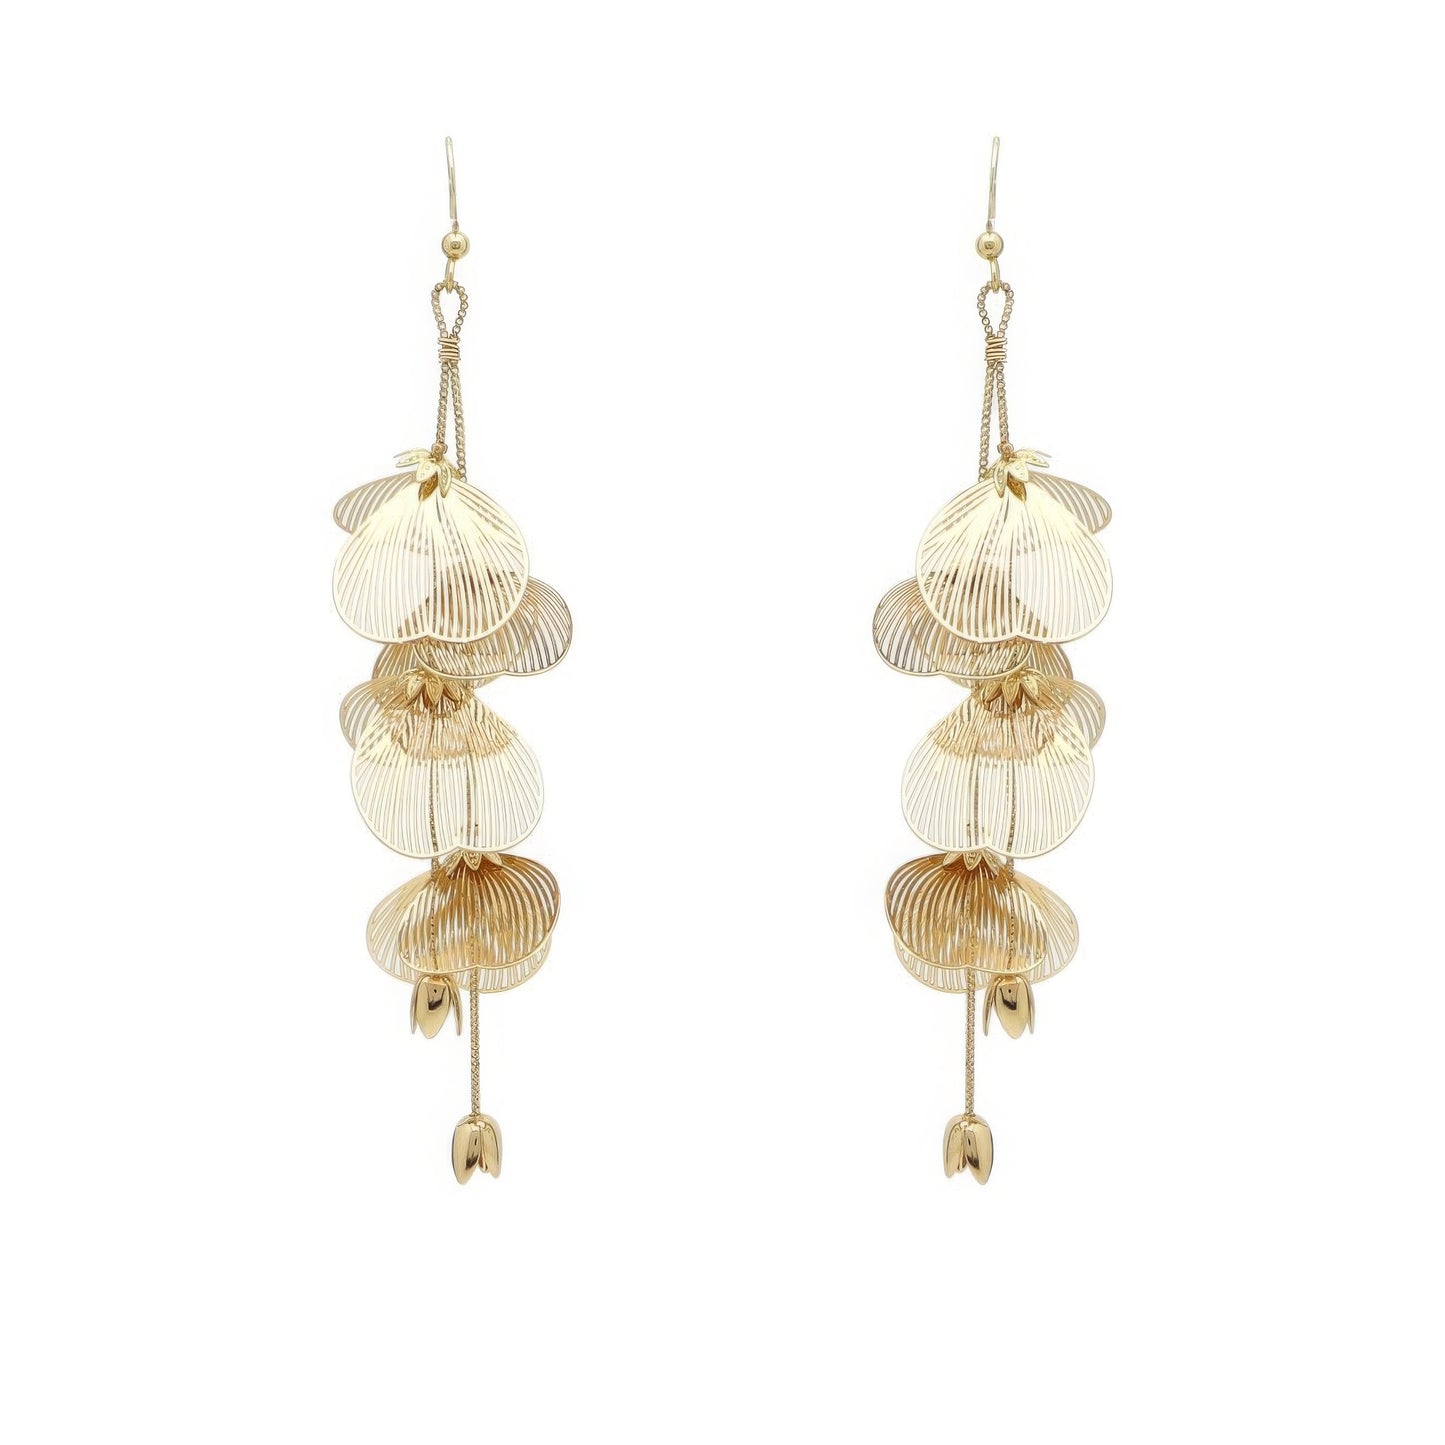 Metal Flower Drop Earrings - Elegant 4-Inch Gold Floral Design